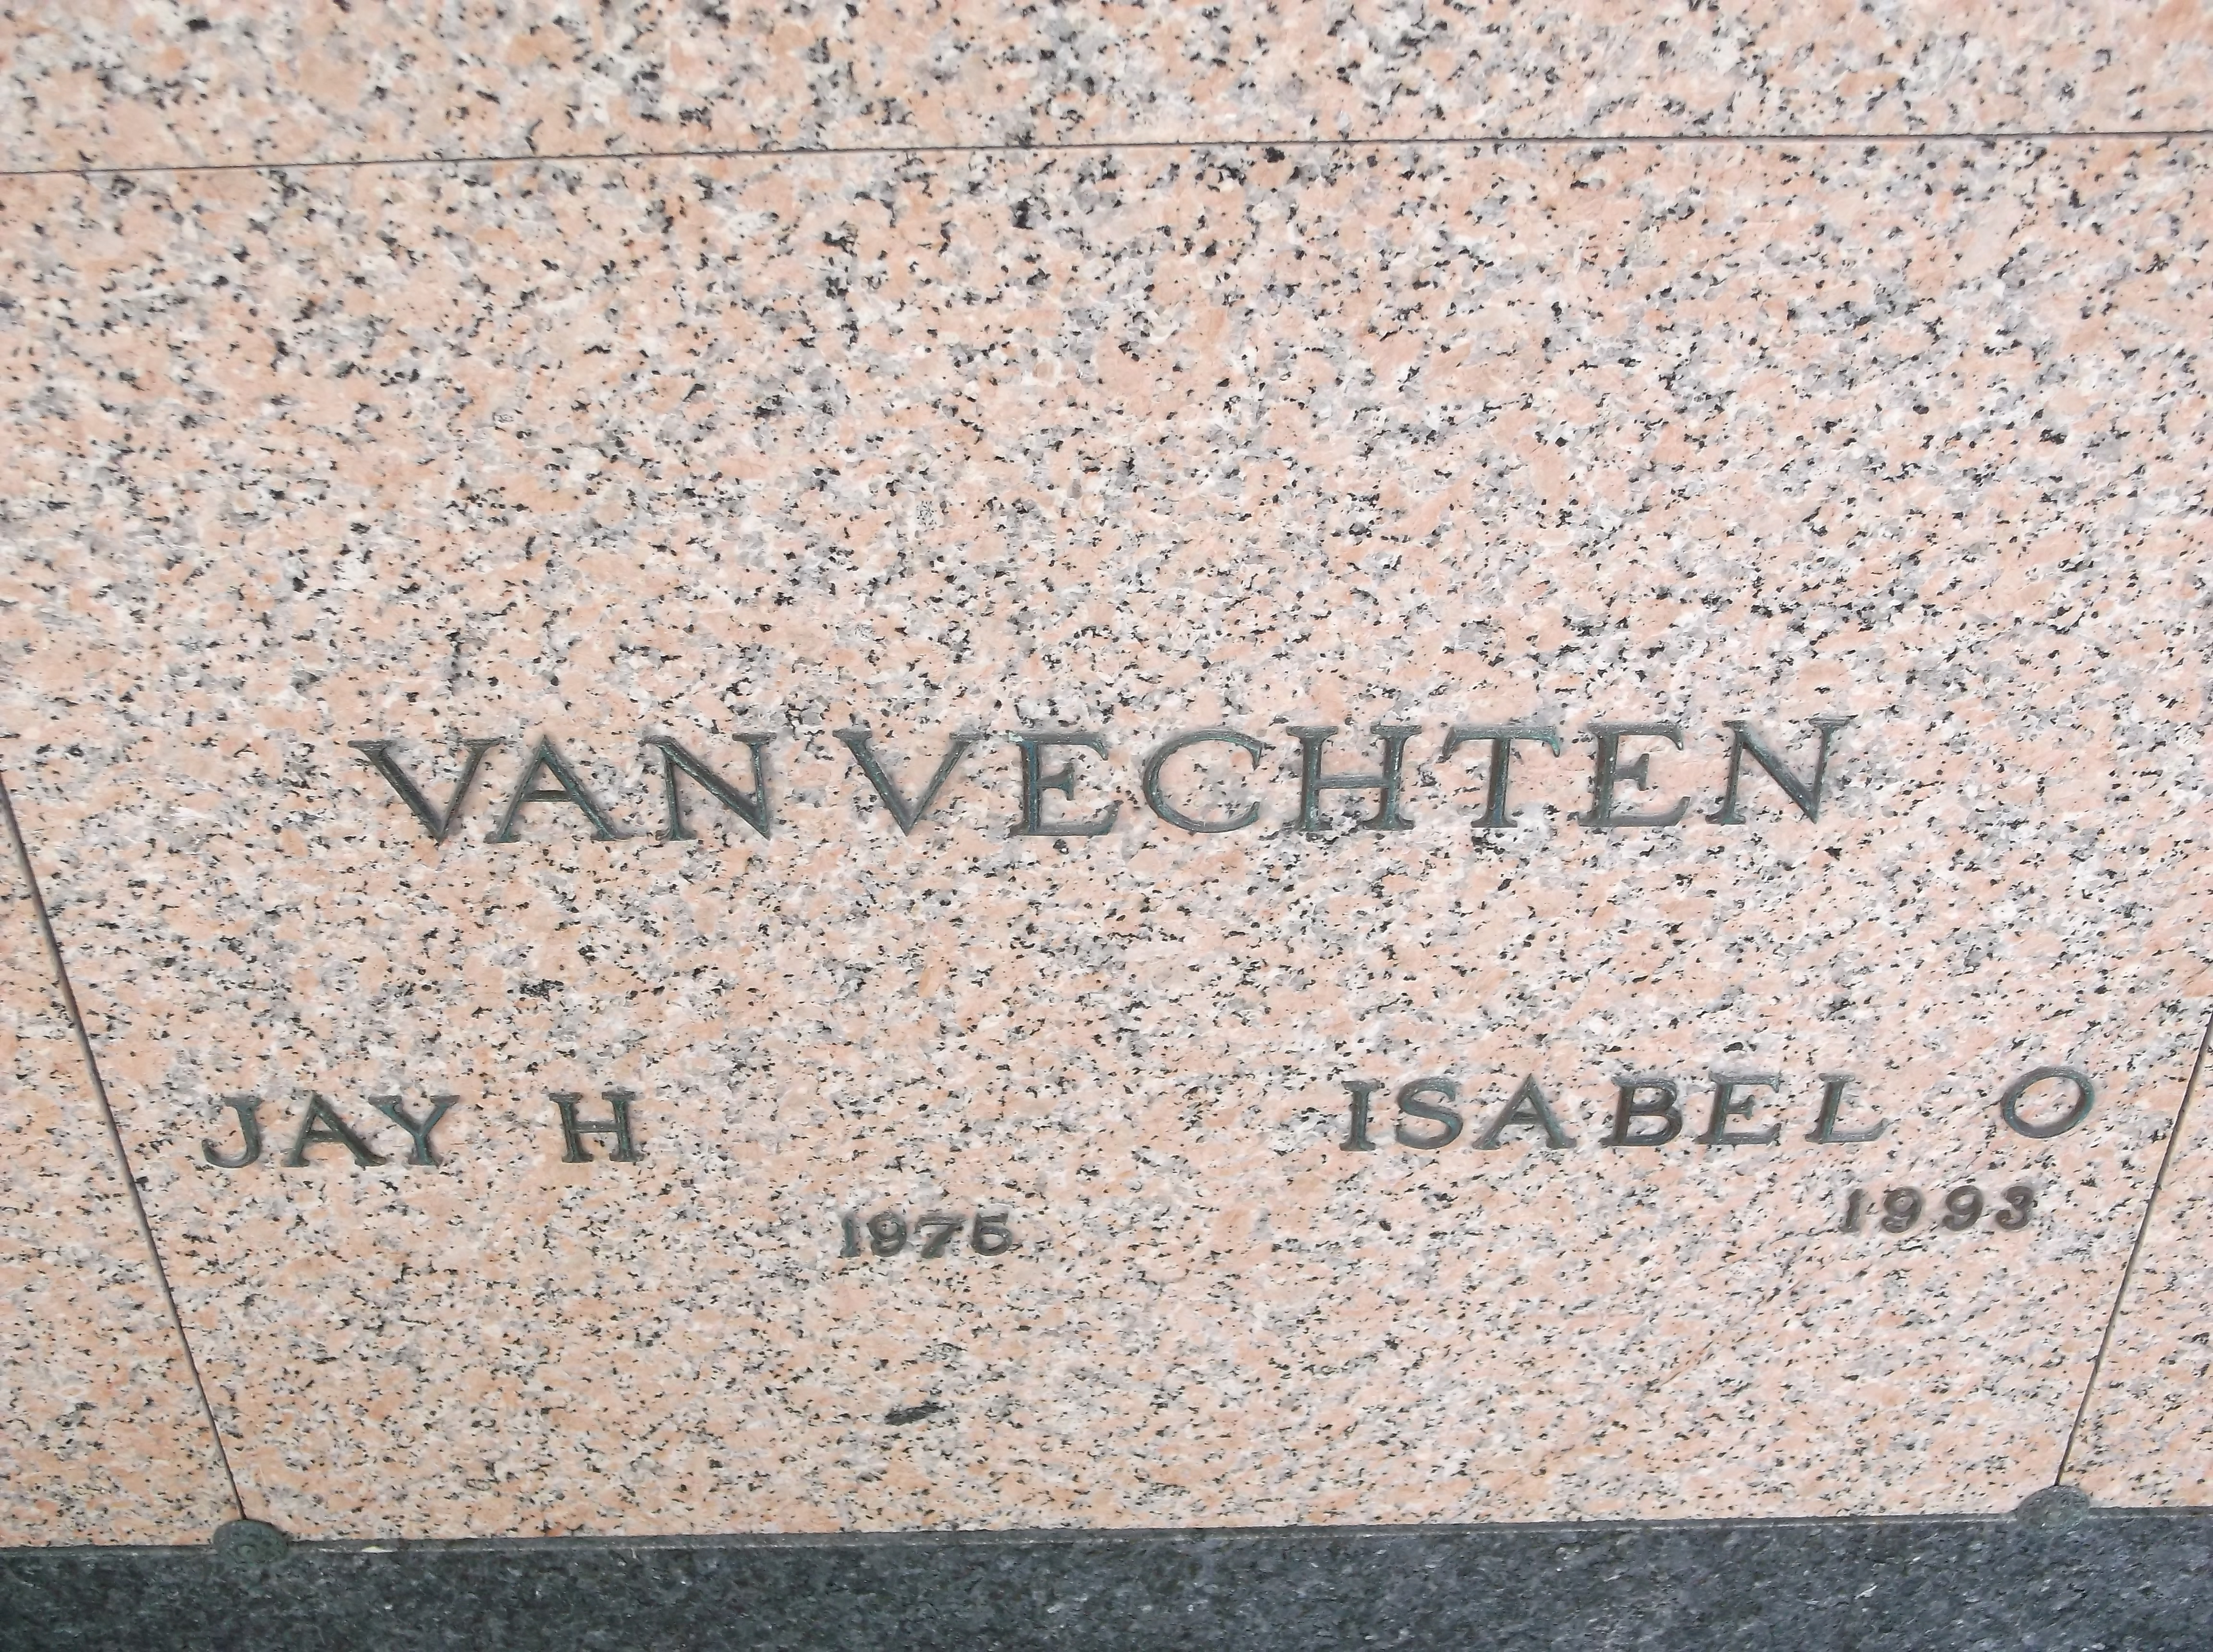 Jay H Van Vechten